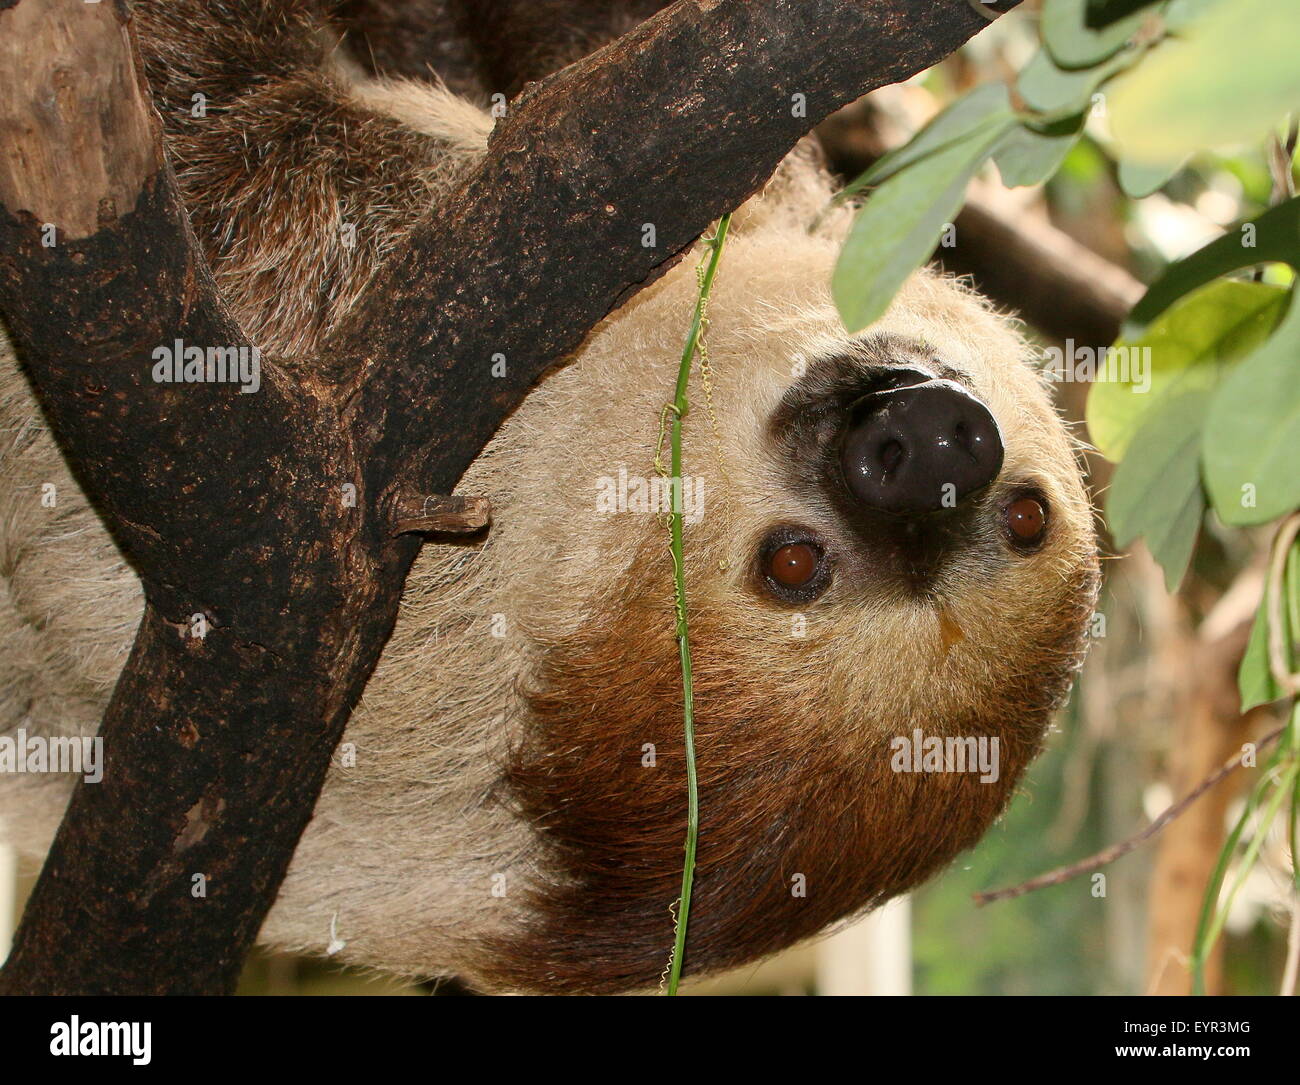 L'Amérique du Sud deux orteils, sloth Linné ou dans le sud de deux doigts (Choloepus didactylus) paresseux, gros plan de la tête Banque D'Images